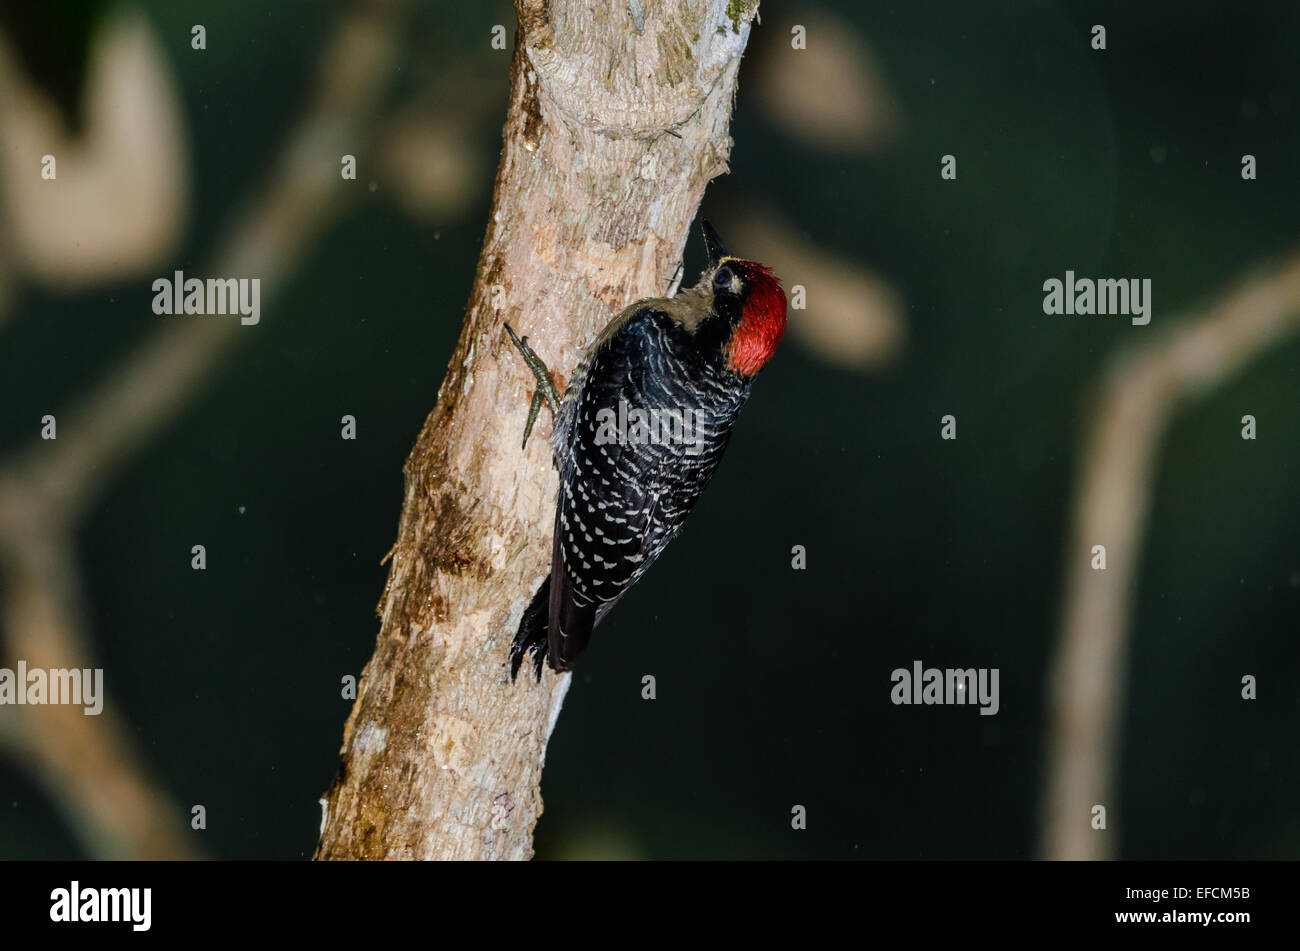 Un Black-cheeked picchio rosso maggiore (Melanerpes pucherani) su un albero. Belize, America centrale. Foto Stock